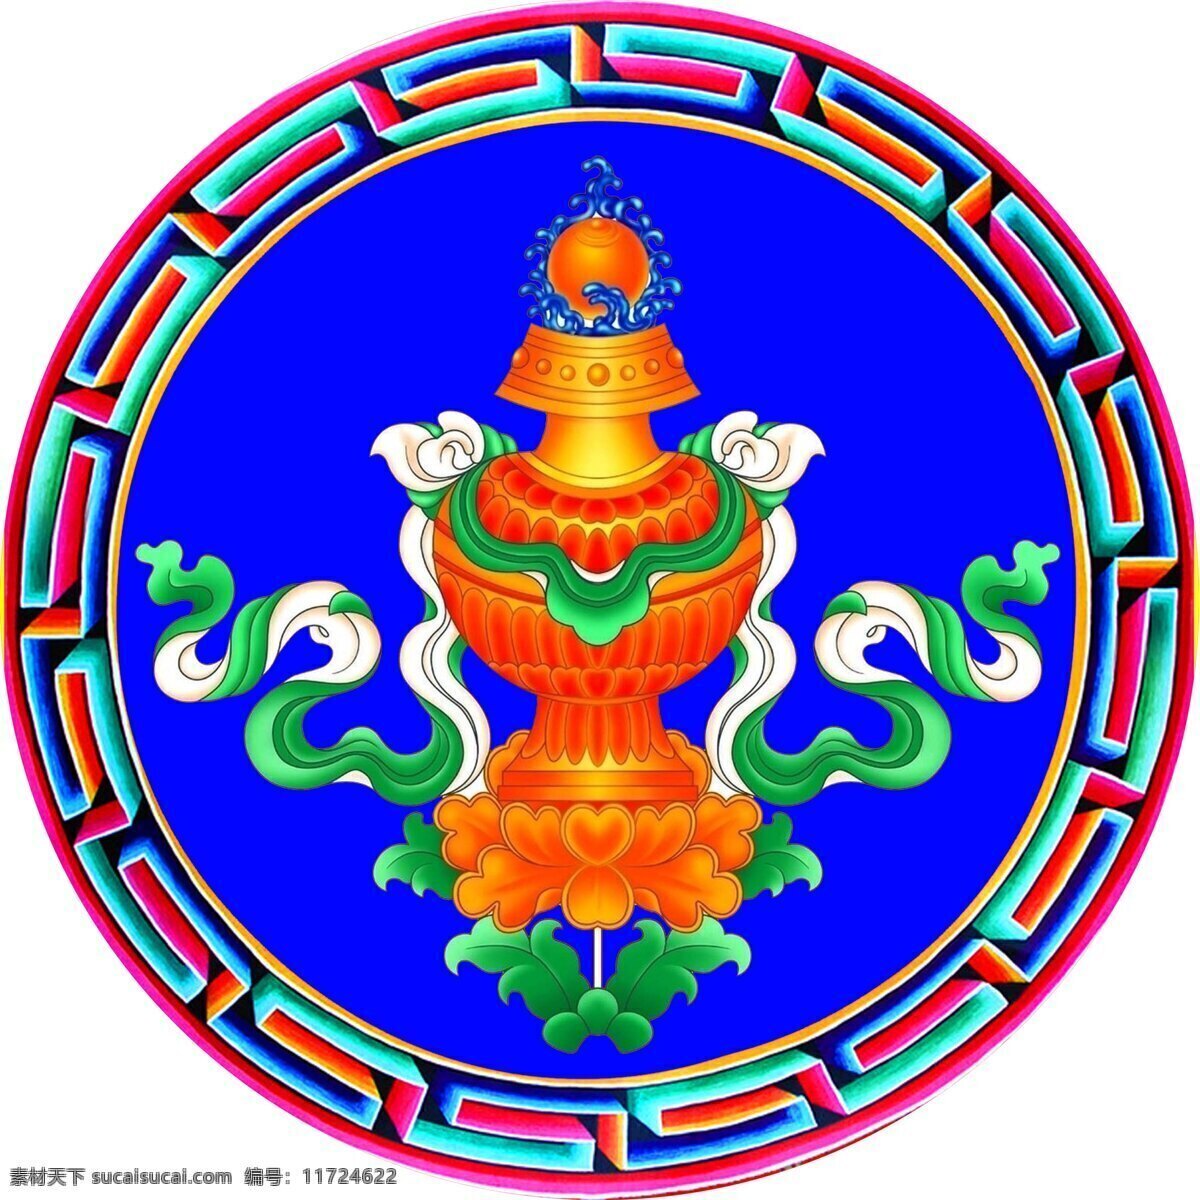 八宝 藏八宝 吉祥八宝 宝瓶 西藏 图案 花边 宗教信仰 文化艺术